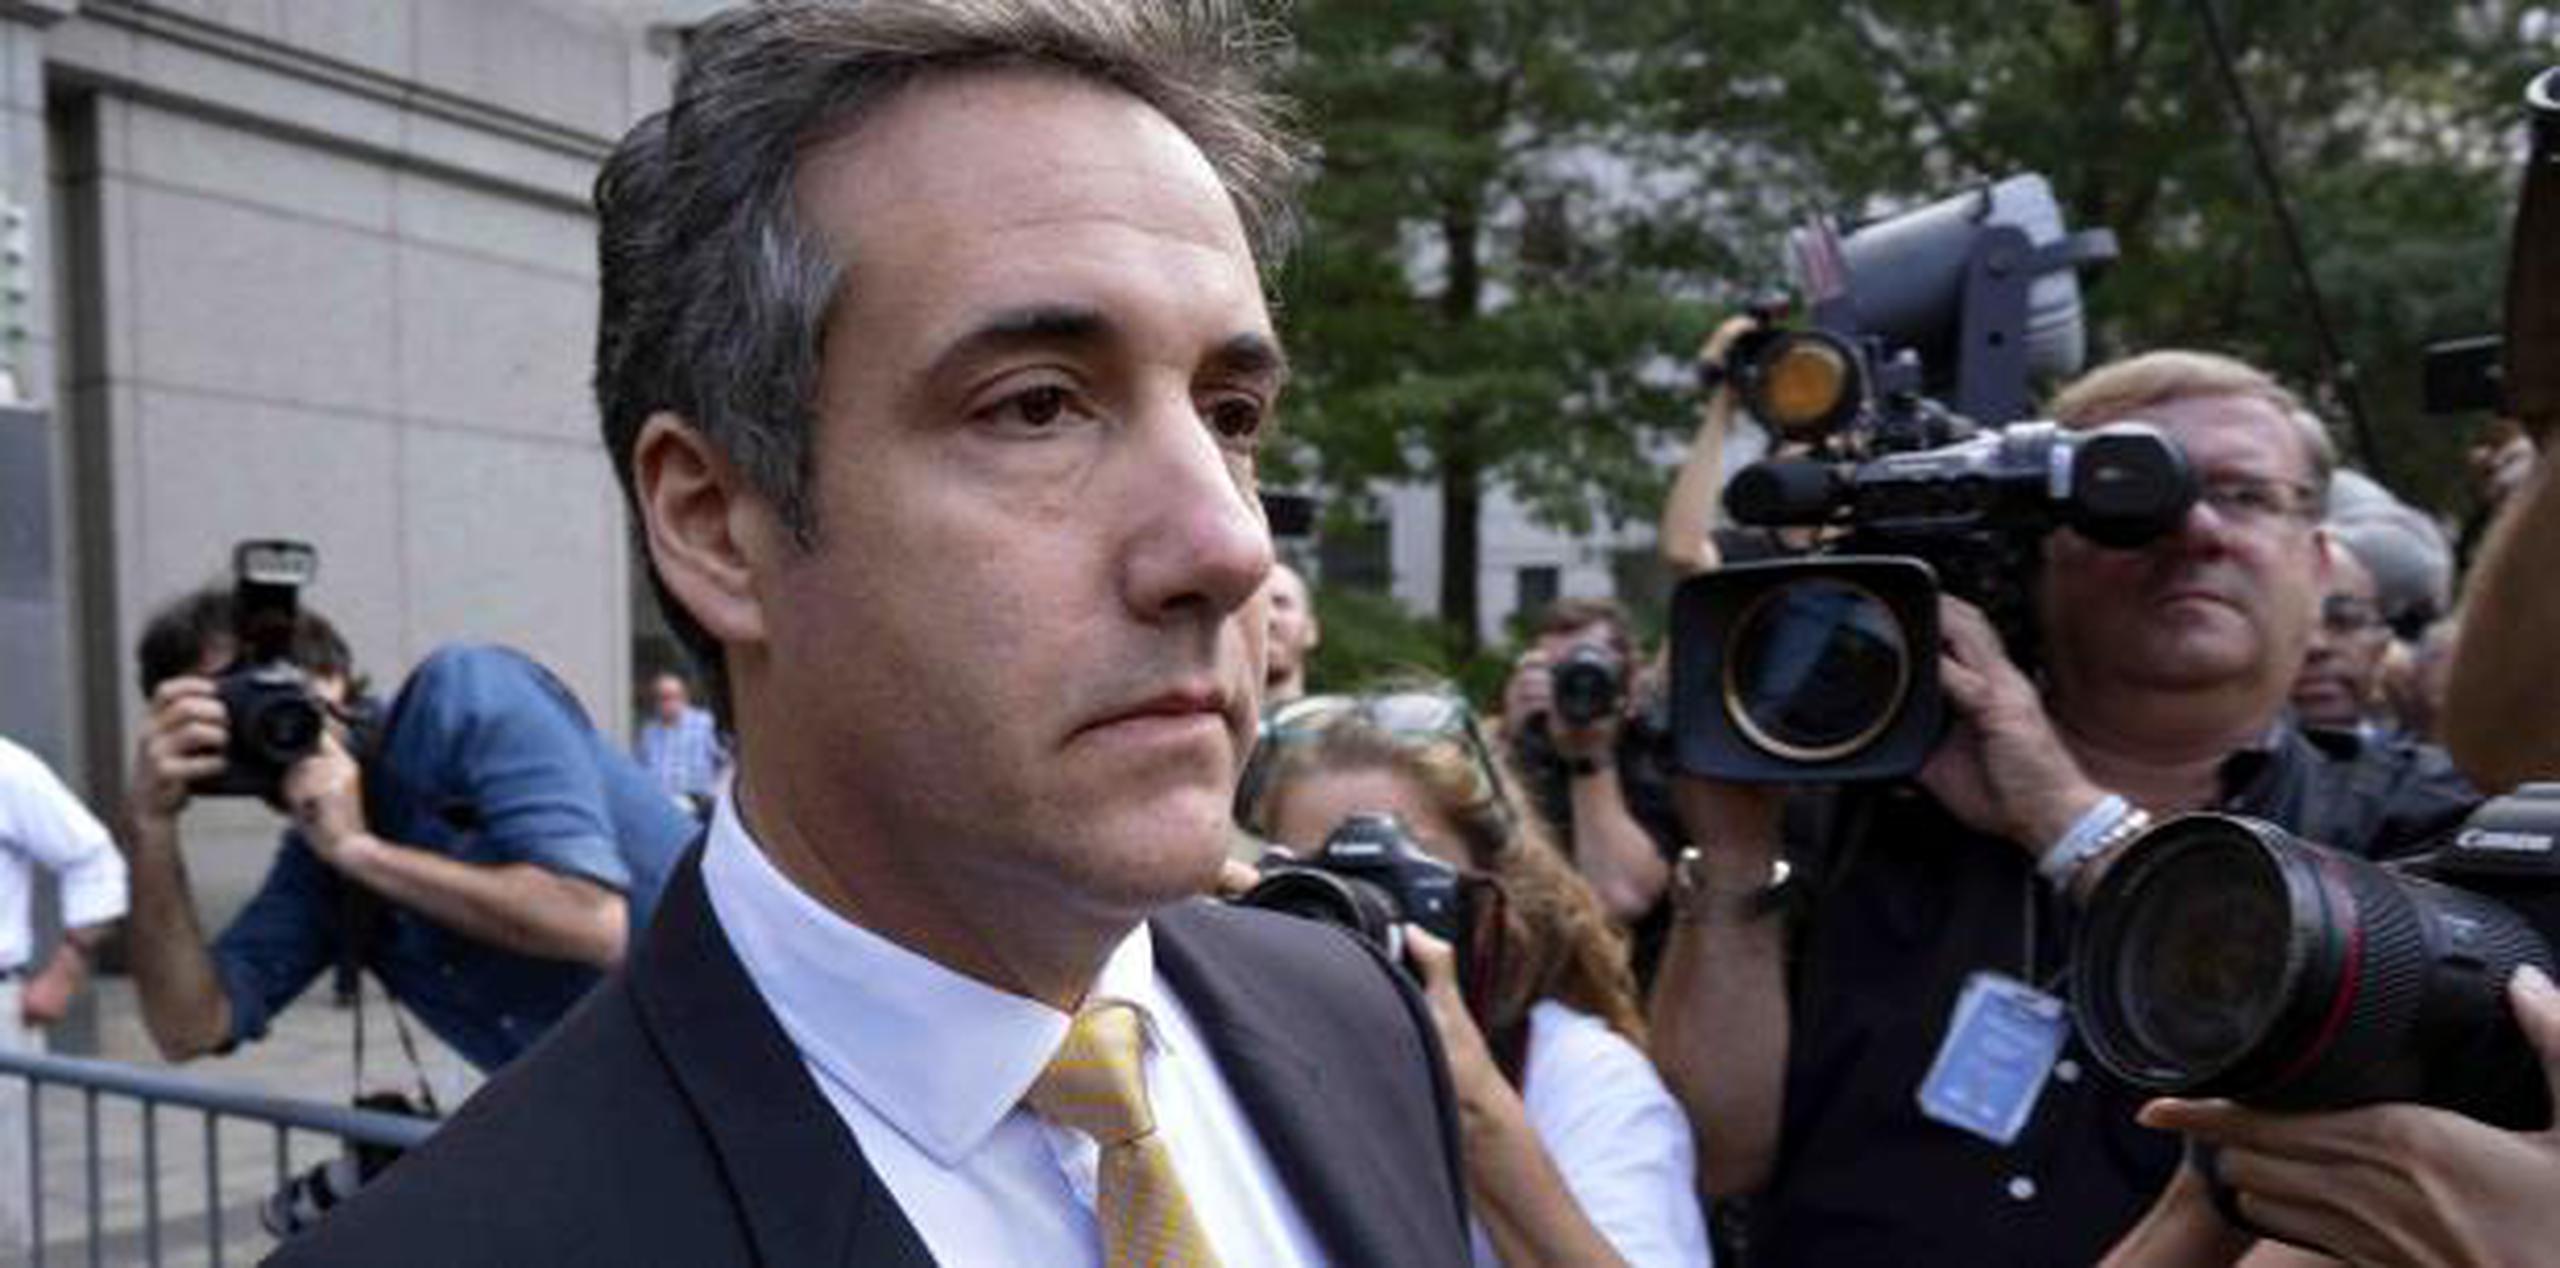 La cadena ABC News informó momentos antes el jueves que Cohen se ha reunido varias veces -durante varias horas- con investigadores de la fiscalía especial.  (AP)

